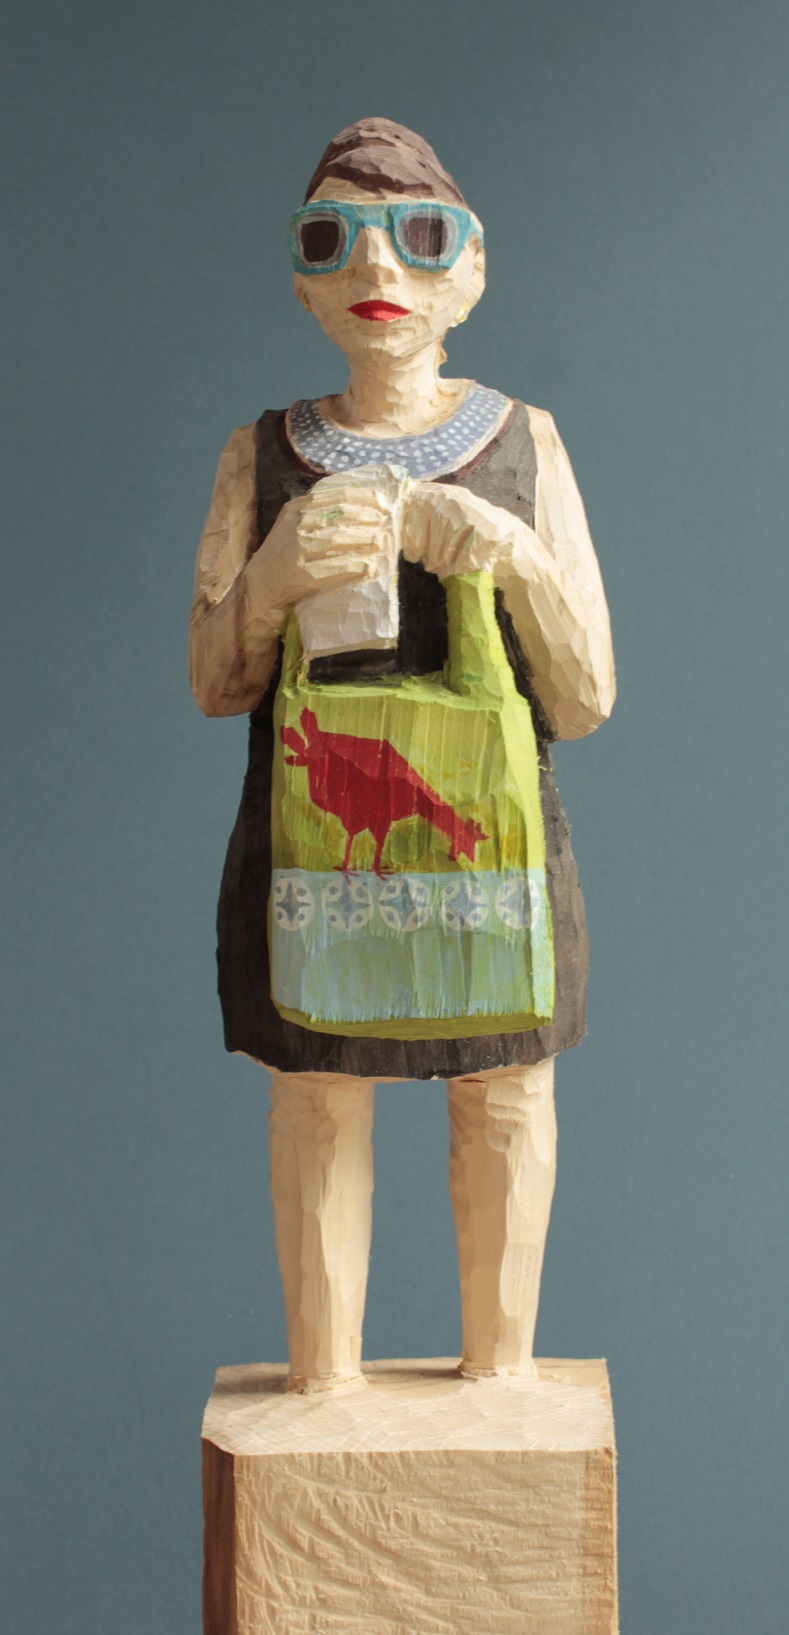 Edekafrau (913) mit Huhn-Tasche